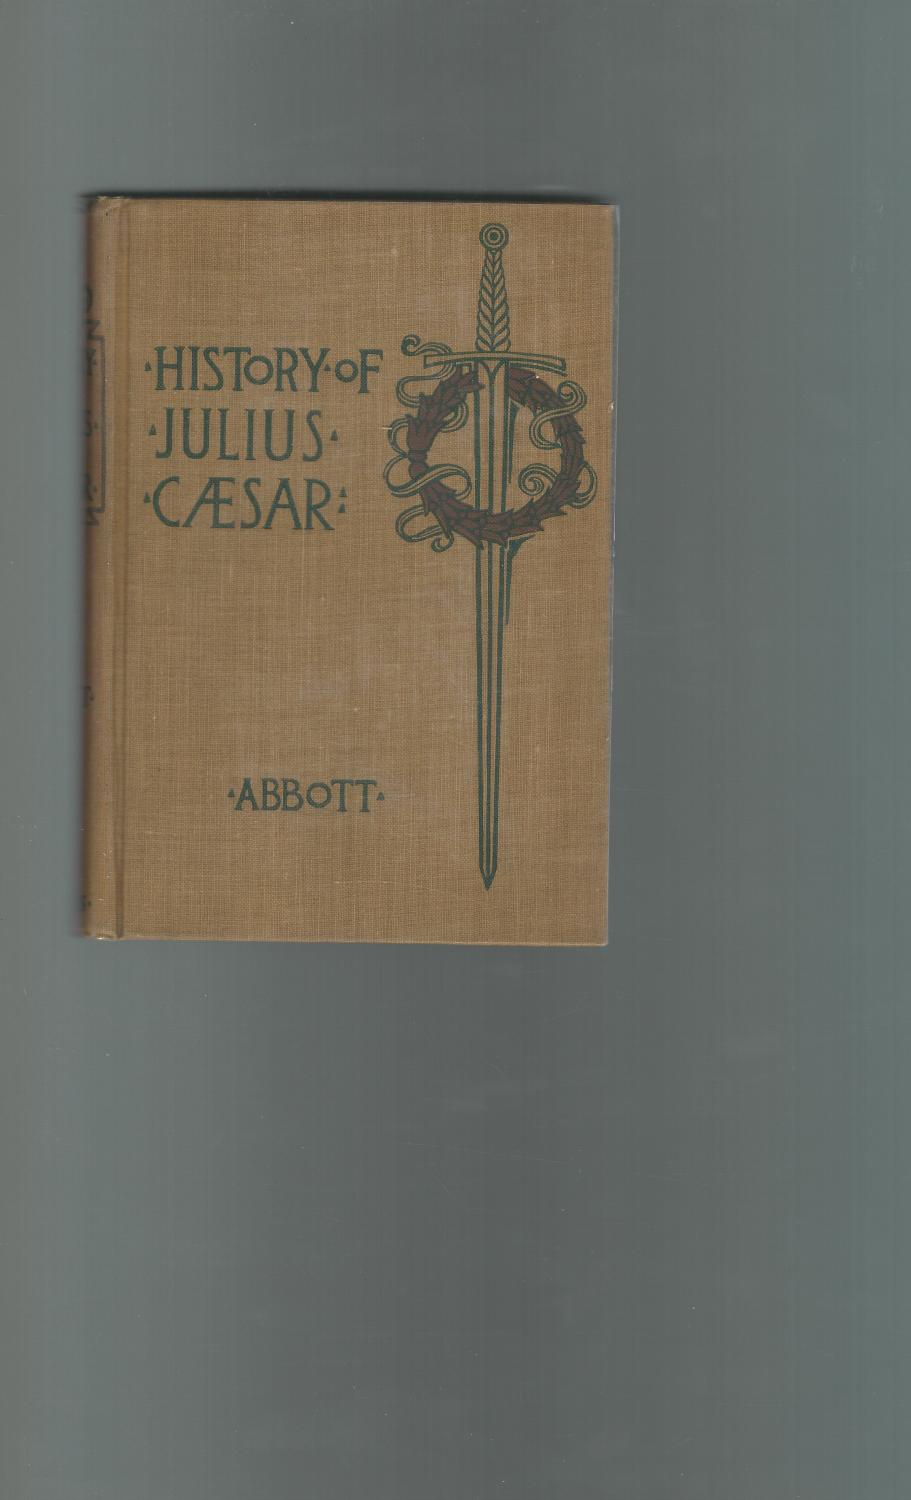 History of Julius Caesar (Makers of History Series) - Caesar, Caius Julius) Abbott, John